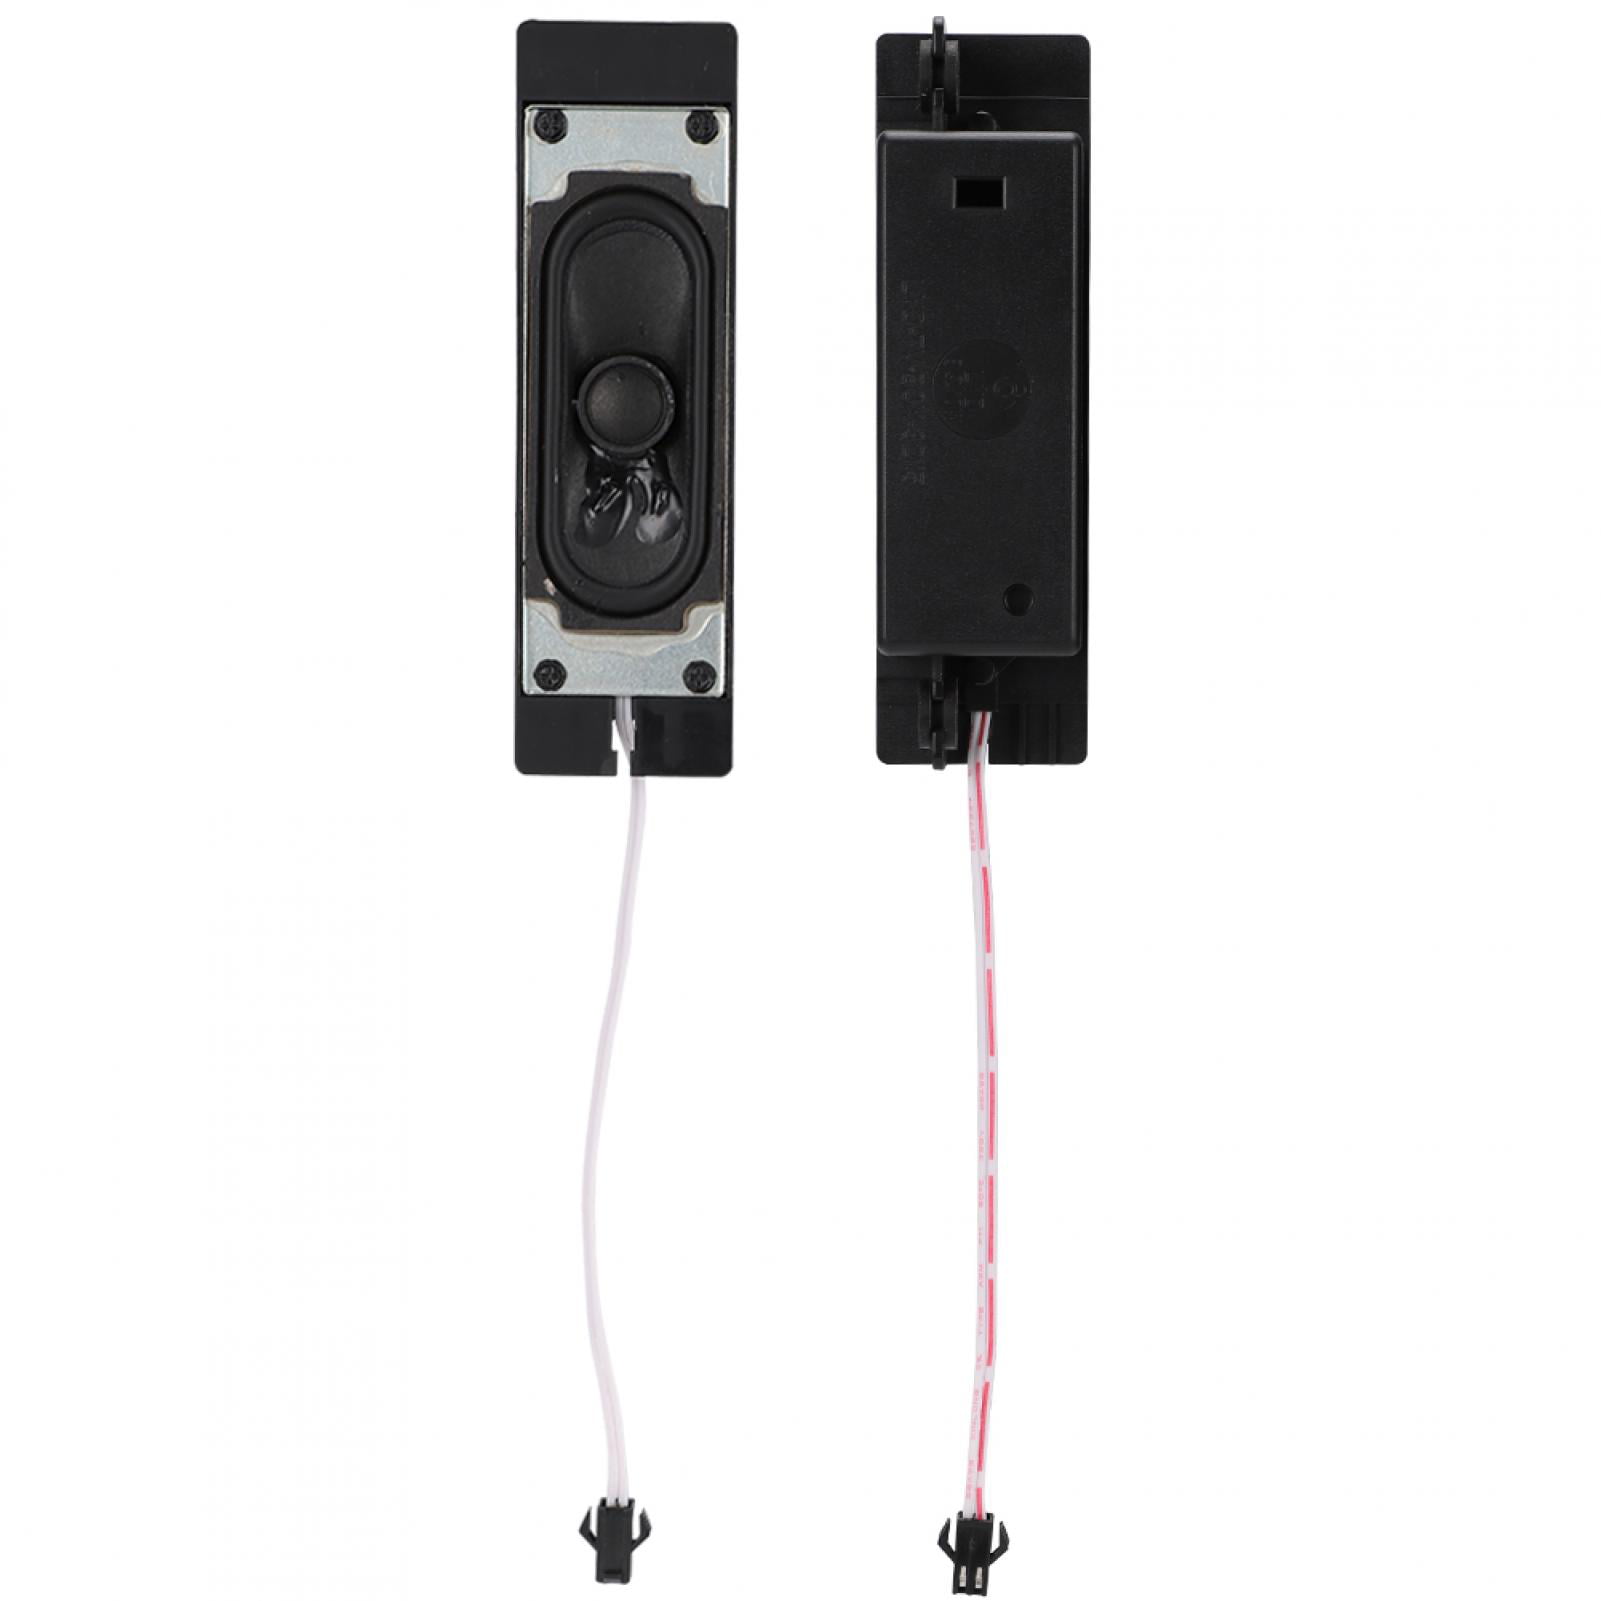 2pcs 8Ω 5W Speaker Loudspeaker Advertising machine TV Video Audio parts 8ohms